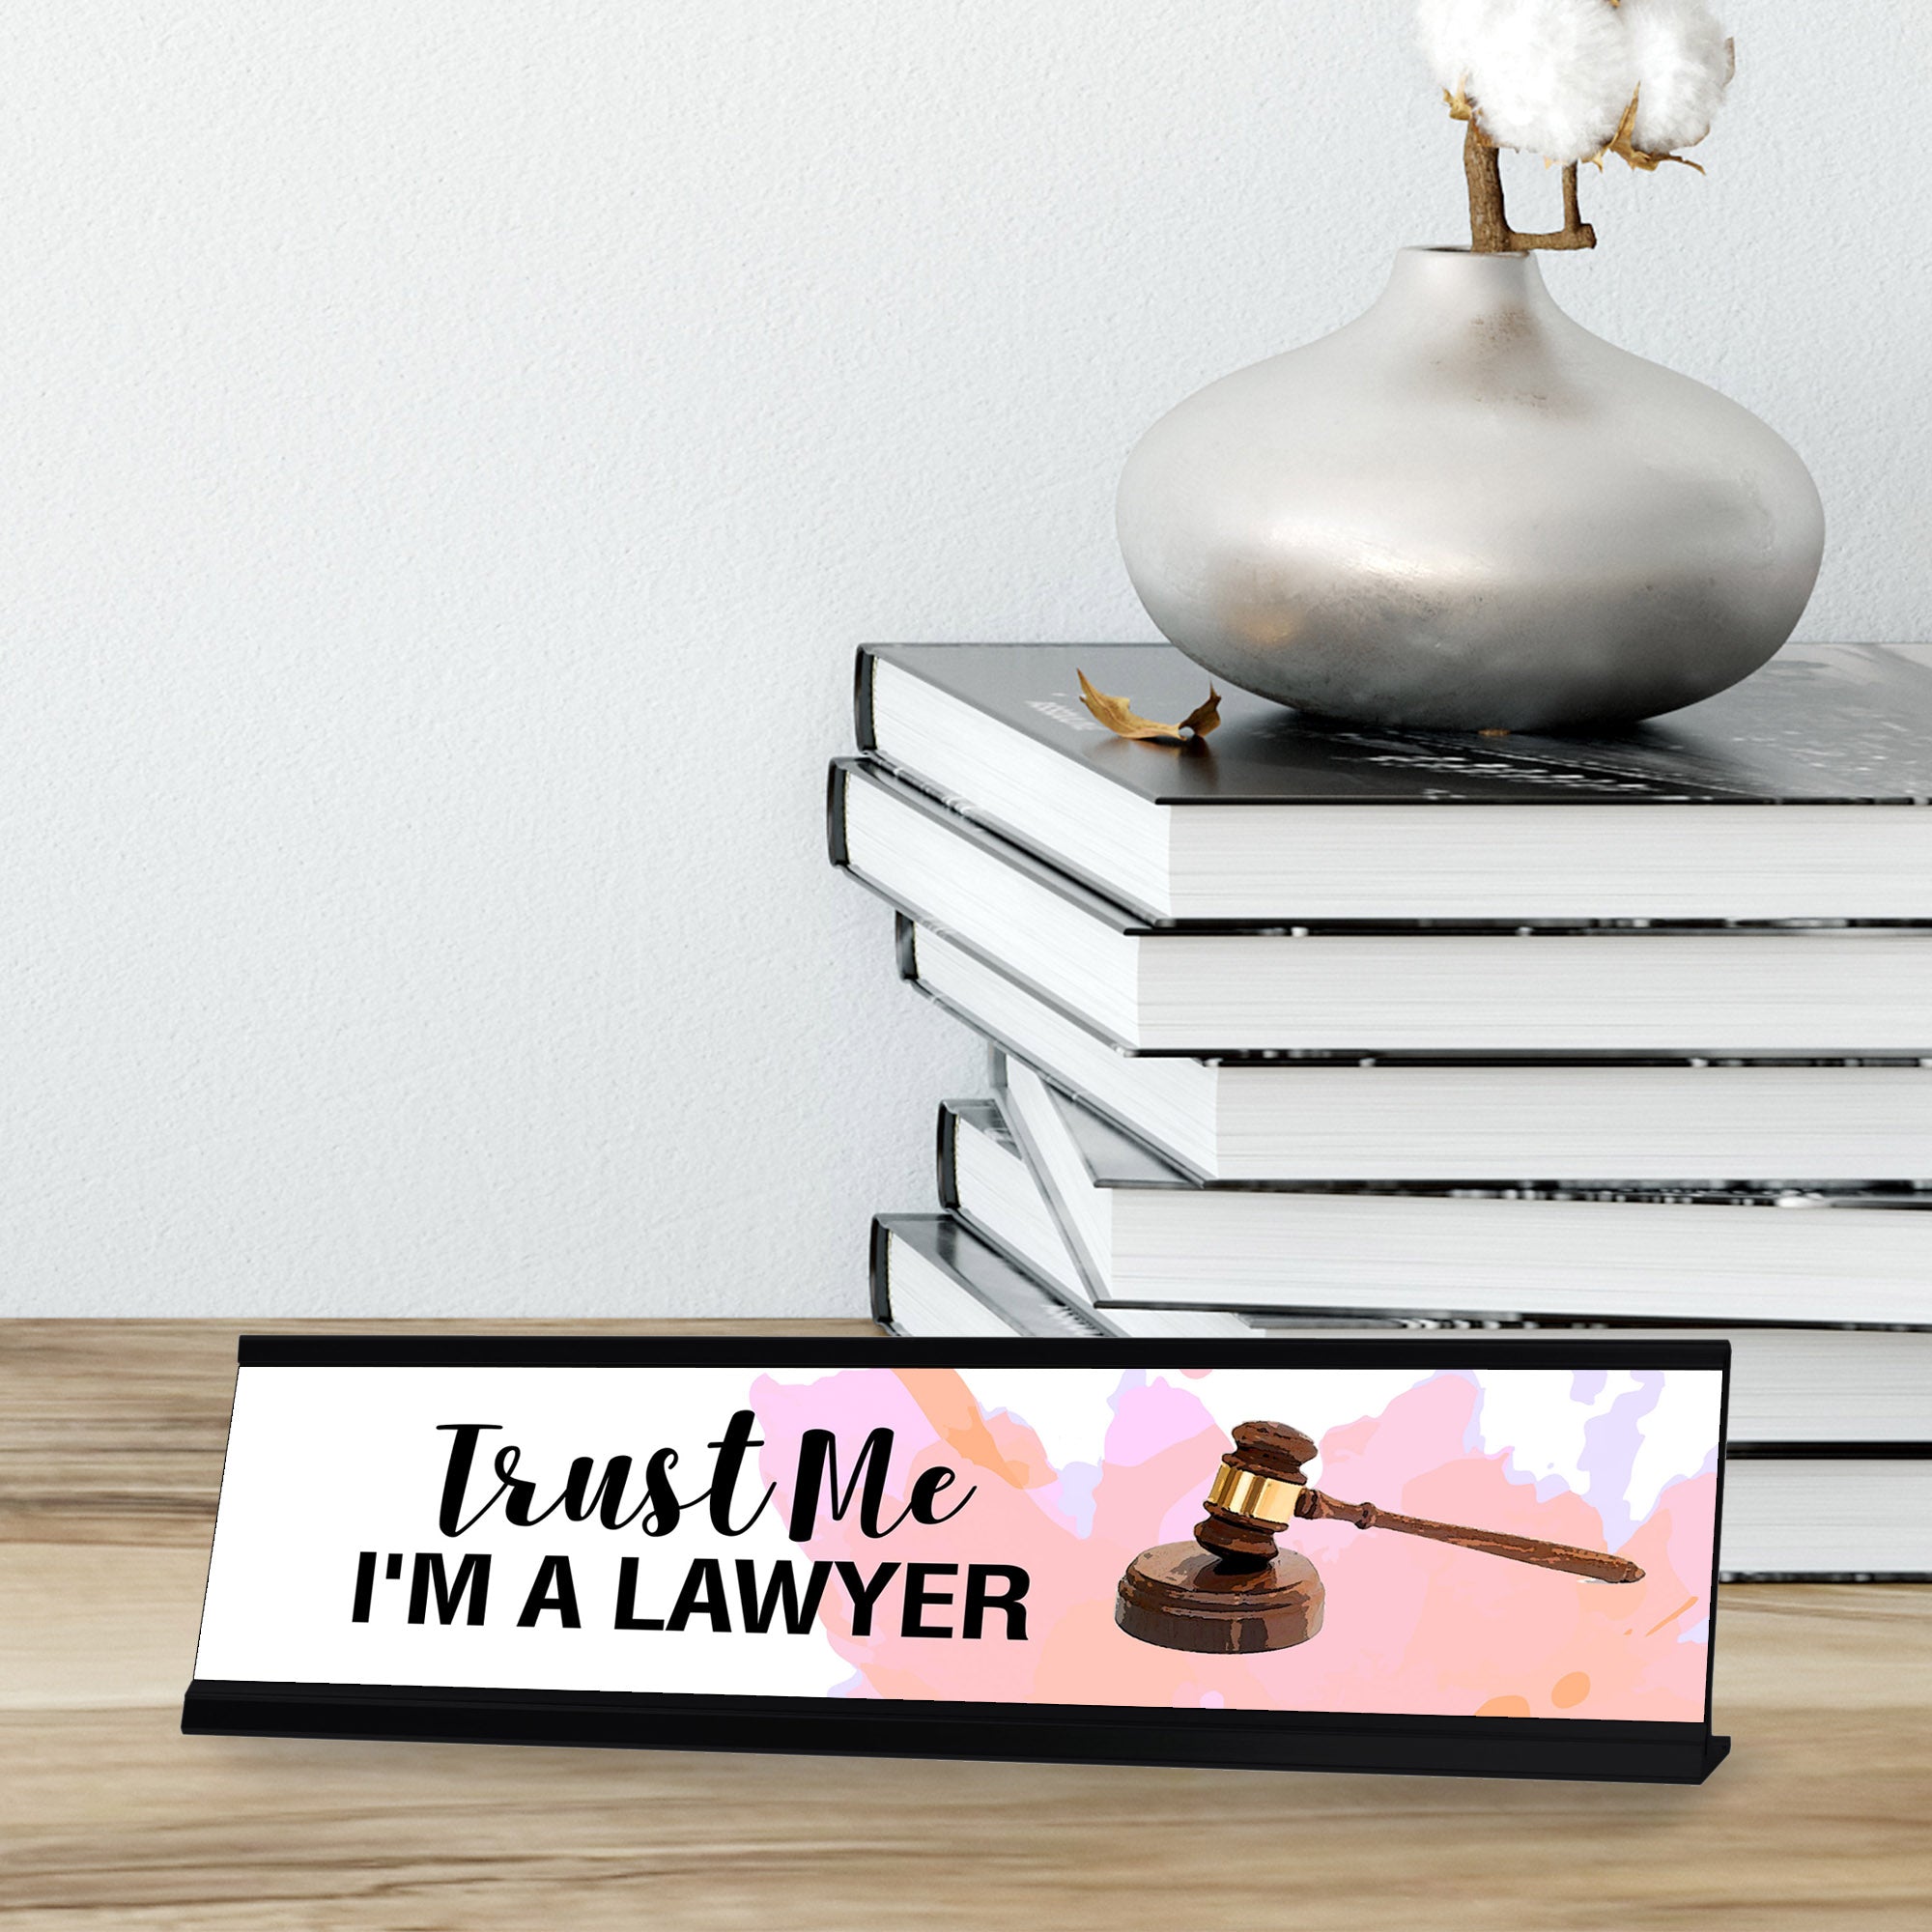 Trust Me I'm A Lawyer, Designer Series Desk Sign Novelty Nameplate (2 x 8")